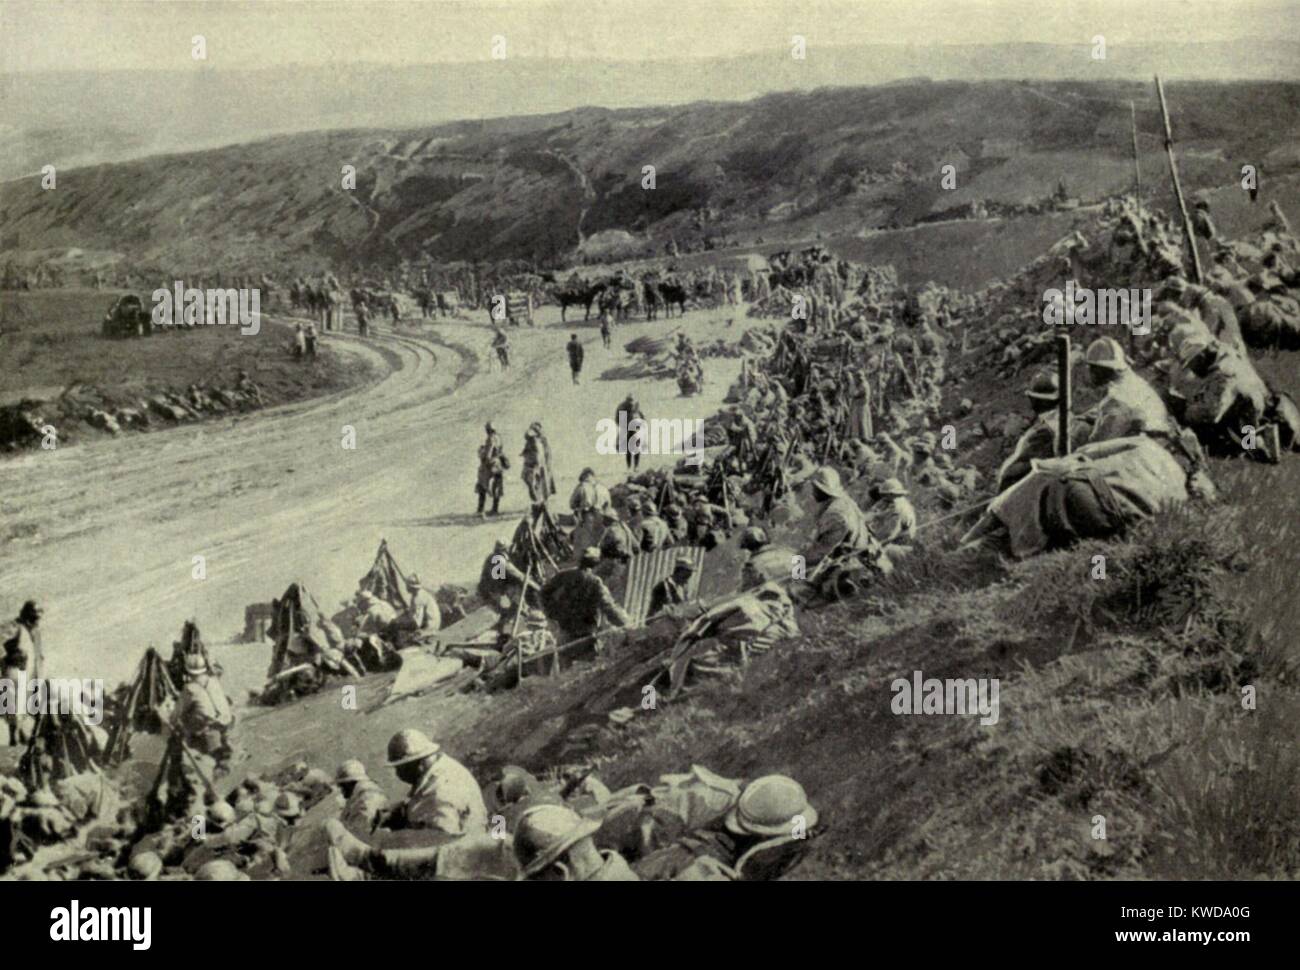 Weltkrieg 1. Somme Offensive. Eine Konzentration von französischen Truppen einen Platz Stunde vor dem Angriff auf sailly-saillisel. Das Dorf wurde am 1. November 1916 gewonnen, in den letzten Wochen der Schlacht an der Somme. (BSLOC 2013 1 114) Stockfoto